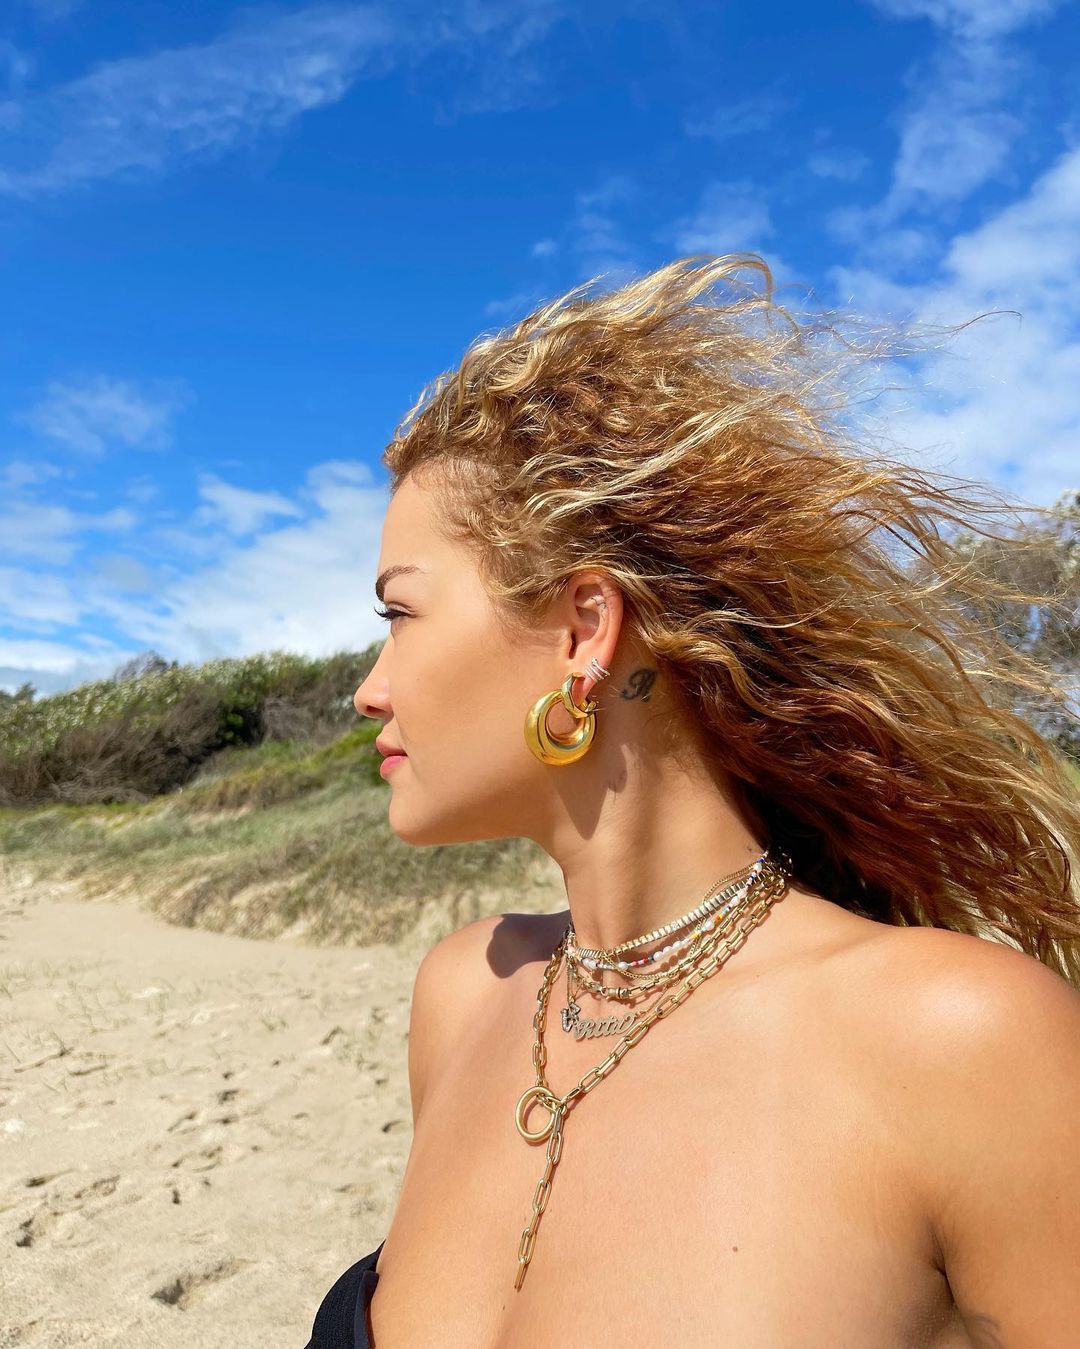 Photo n°36 : Rita Ora a trouv une plage noire!